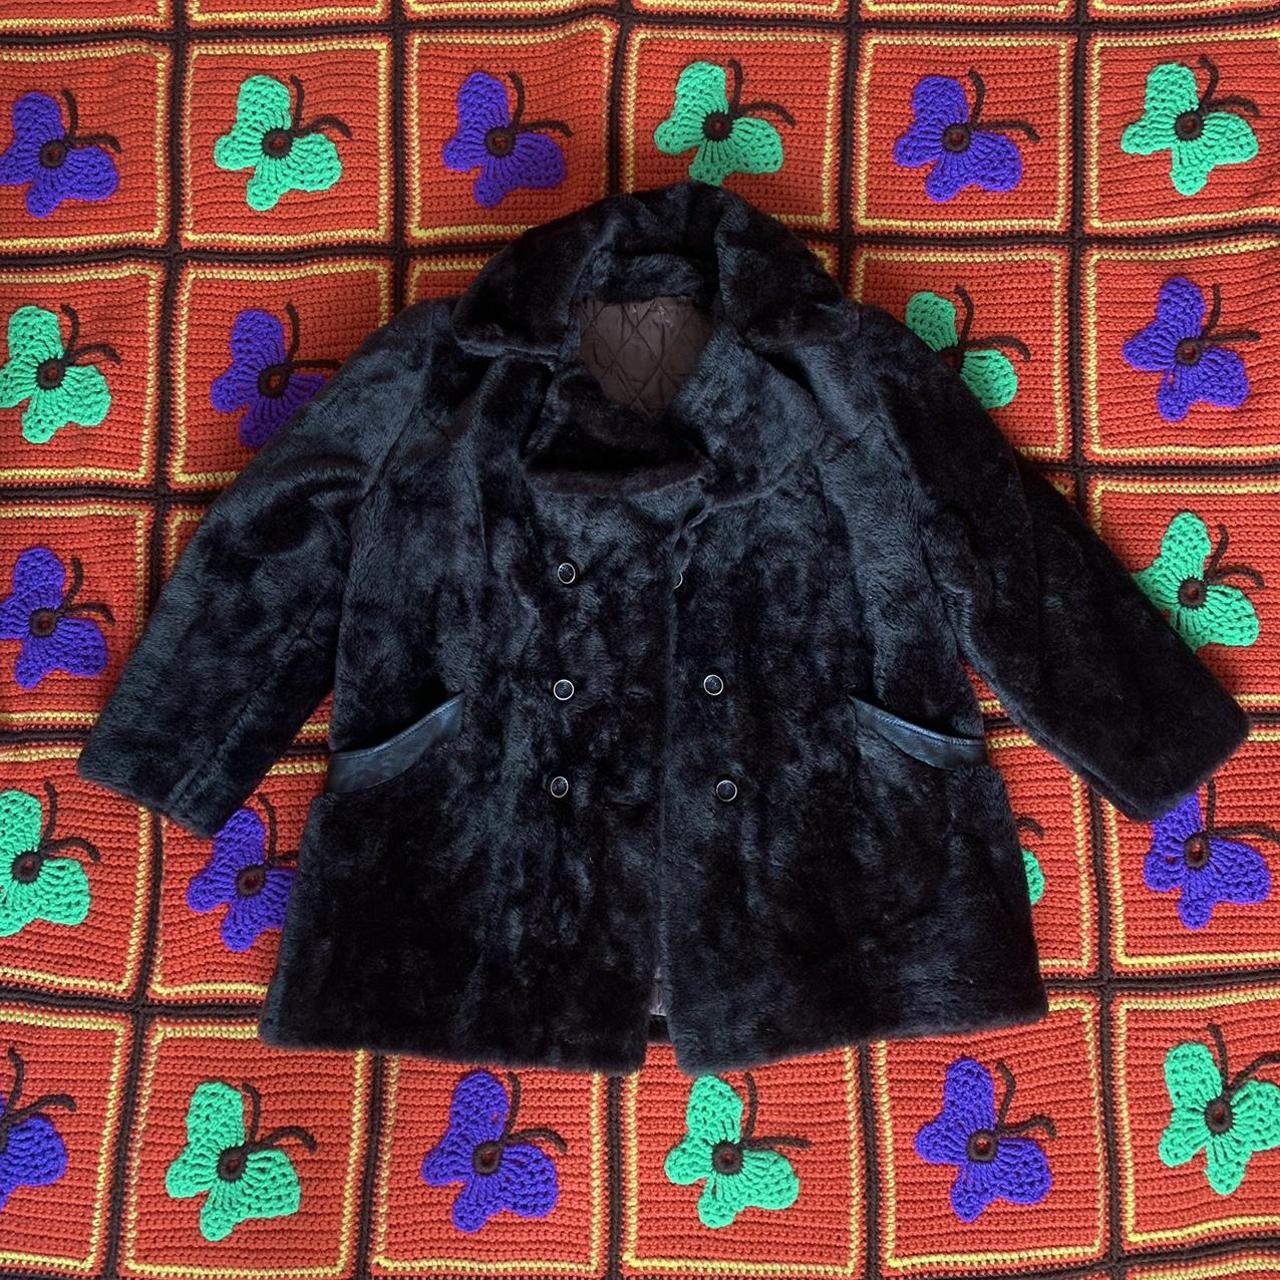 vintage black fur coat 🧸 1960s ⭐️ the coolest fur... - Depop